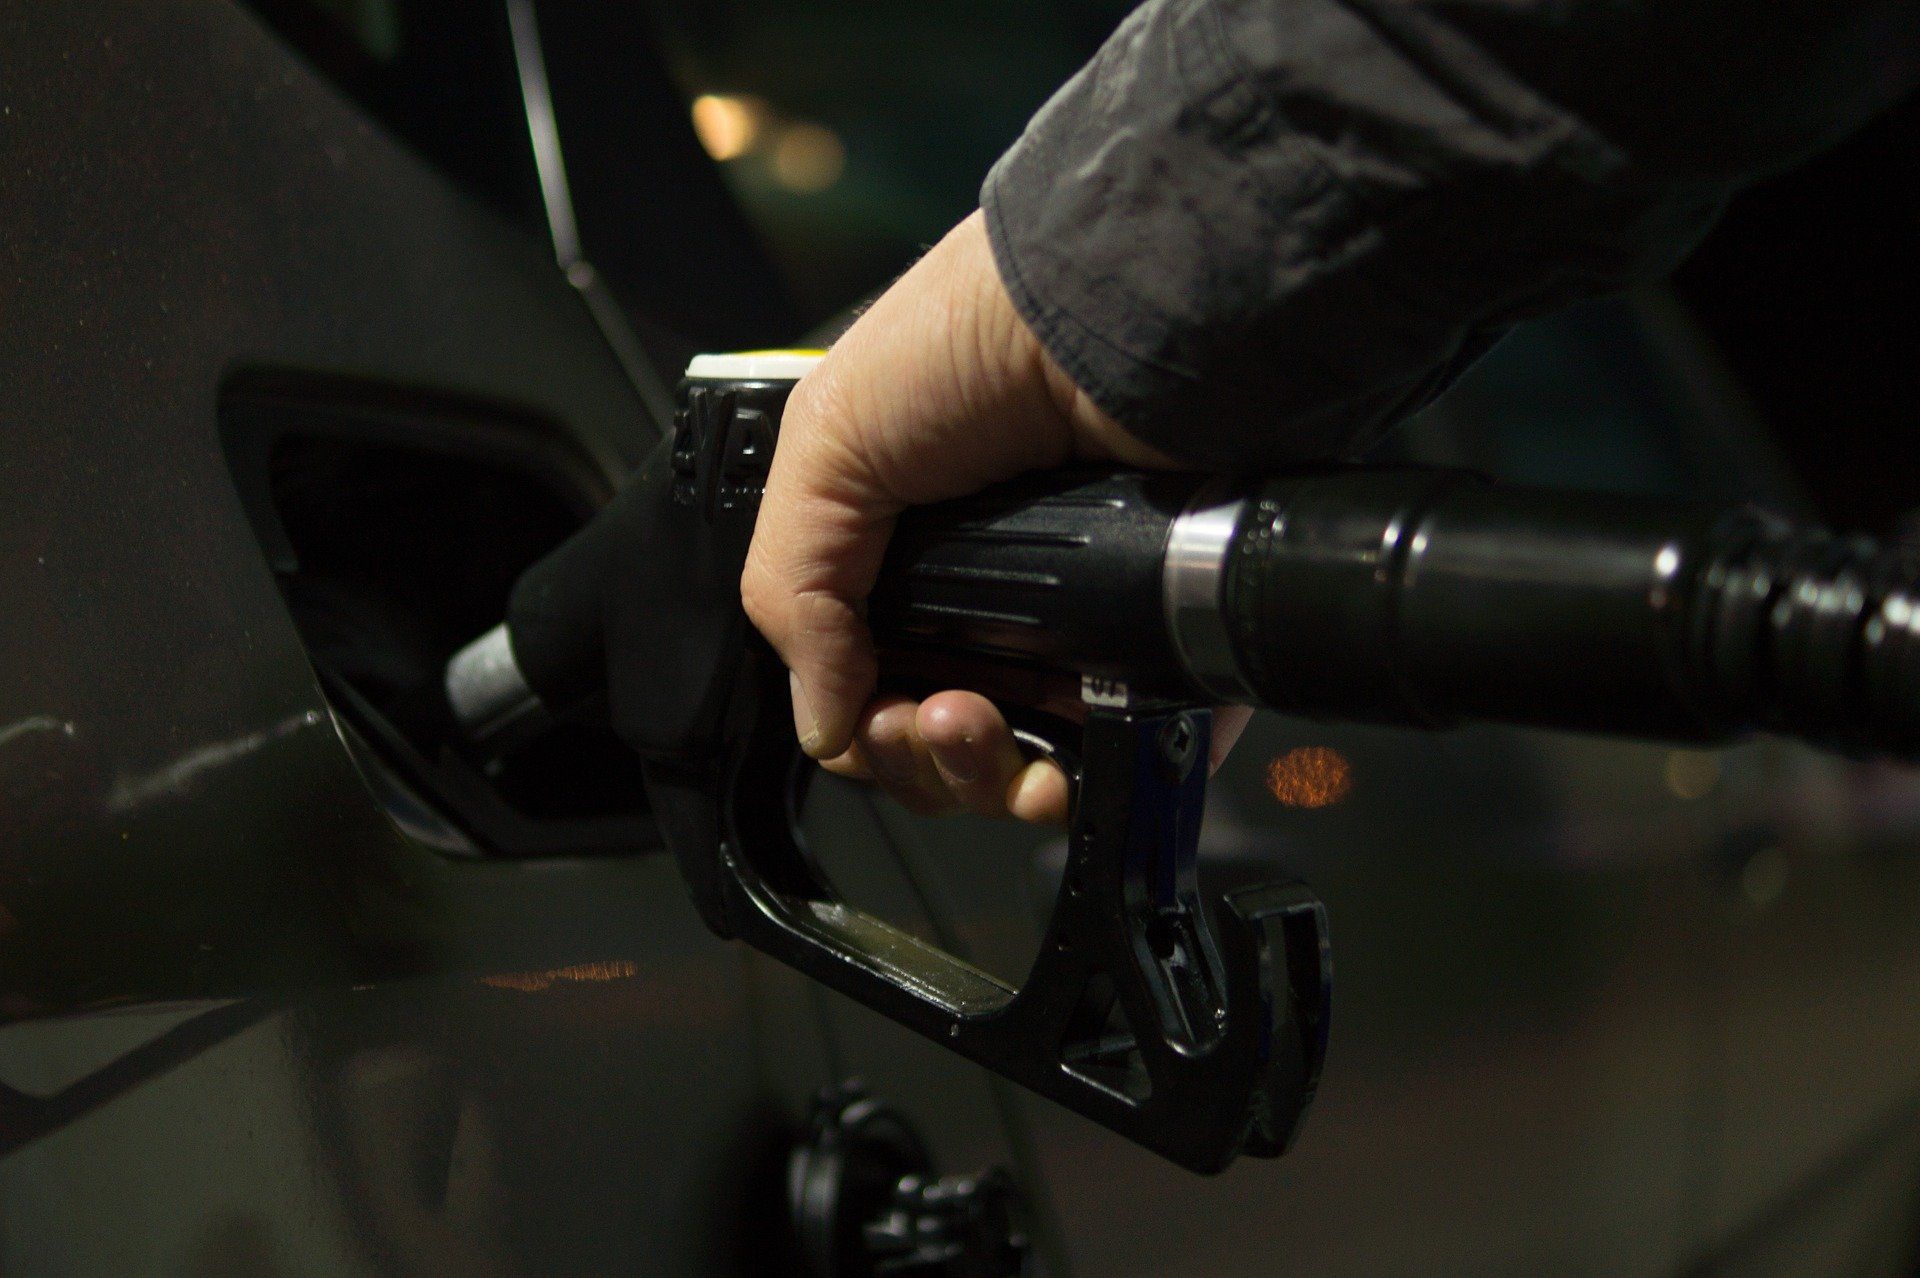 Fuel price July 29, 2022: Petrol Rs 106.31, diesel Rs 94.27 in Mumbai